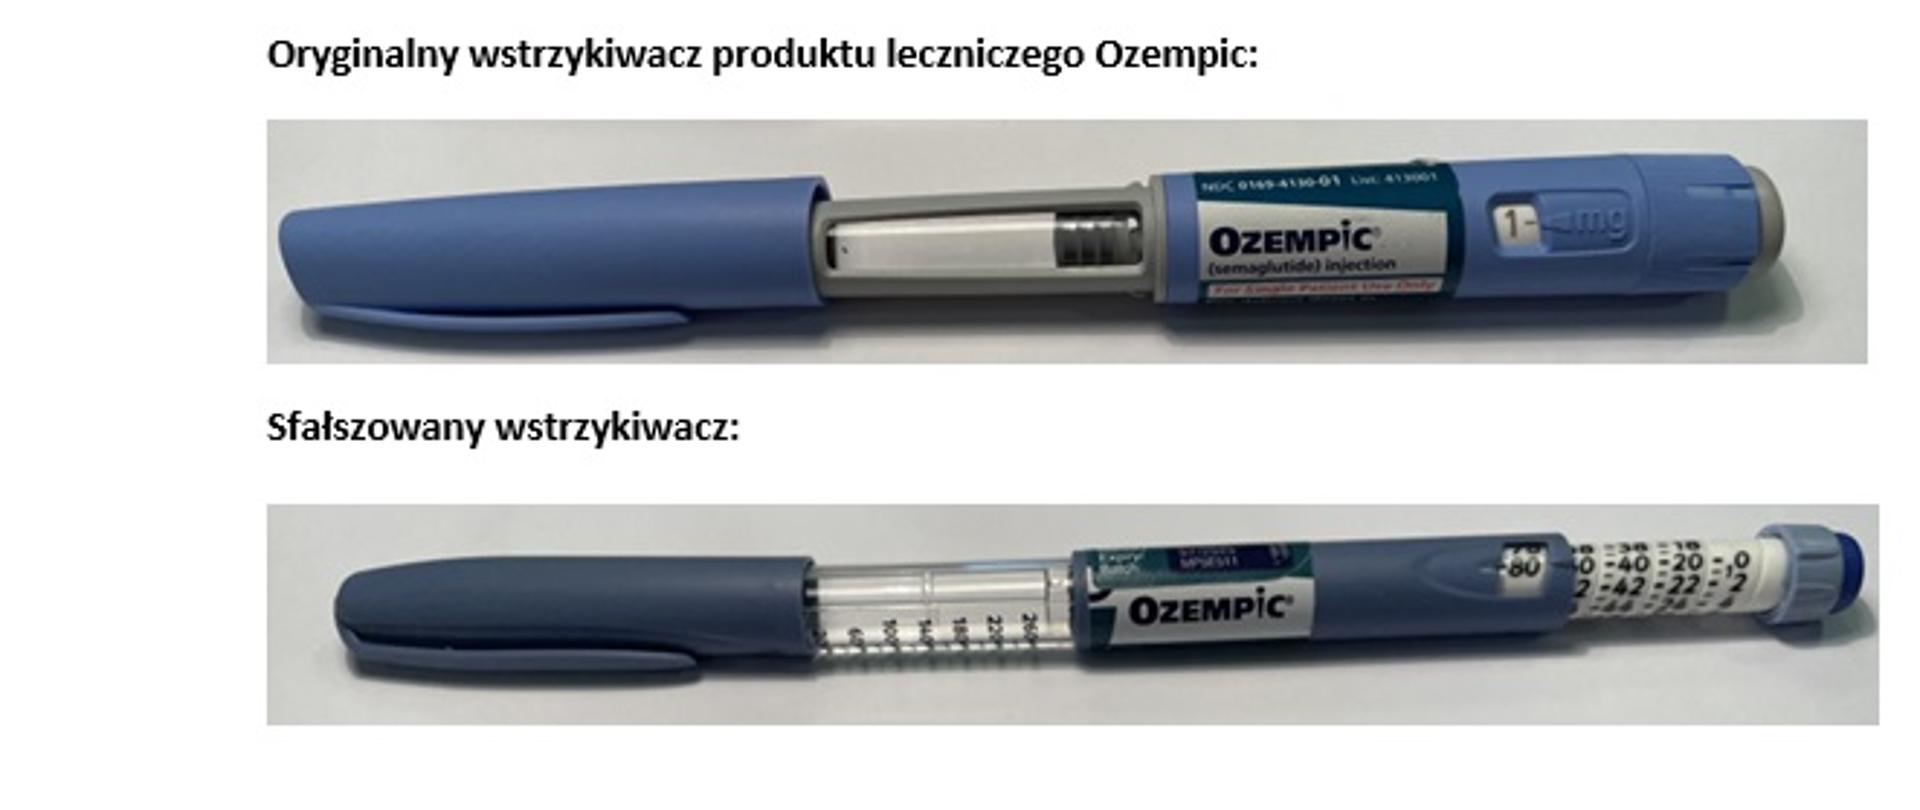 Oryginalny i sfałszowany wstrzykiwacz produktu leczniczego Ozempic